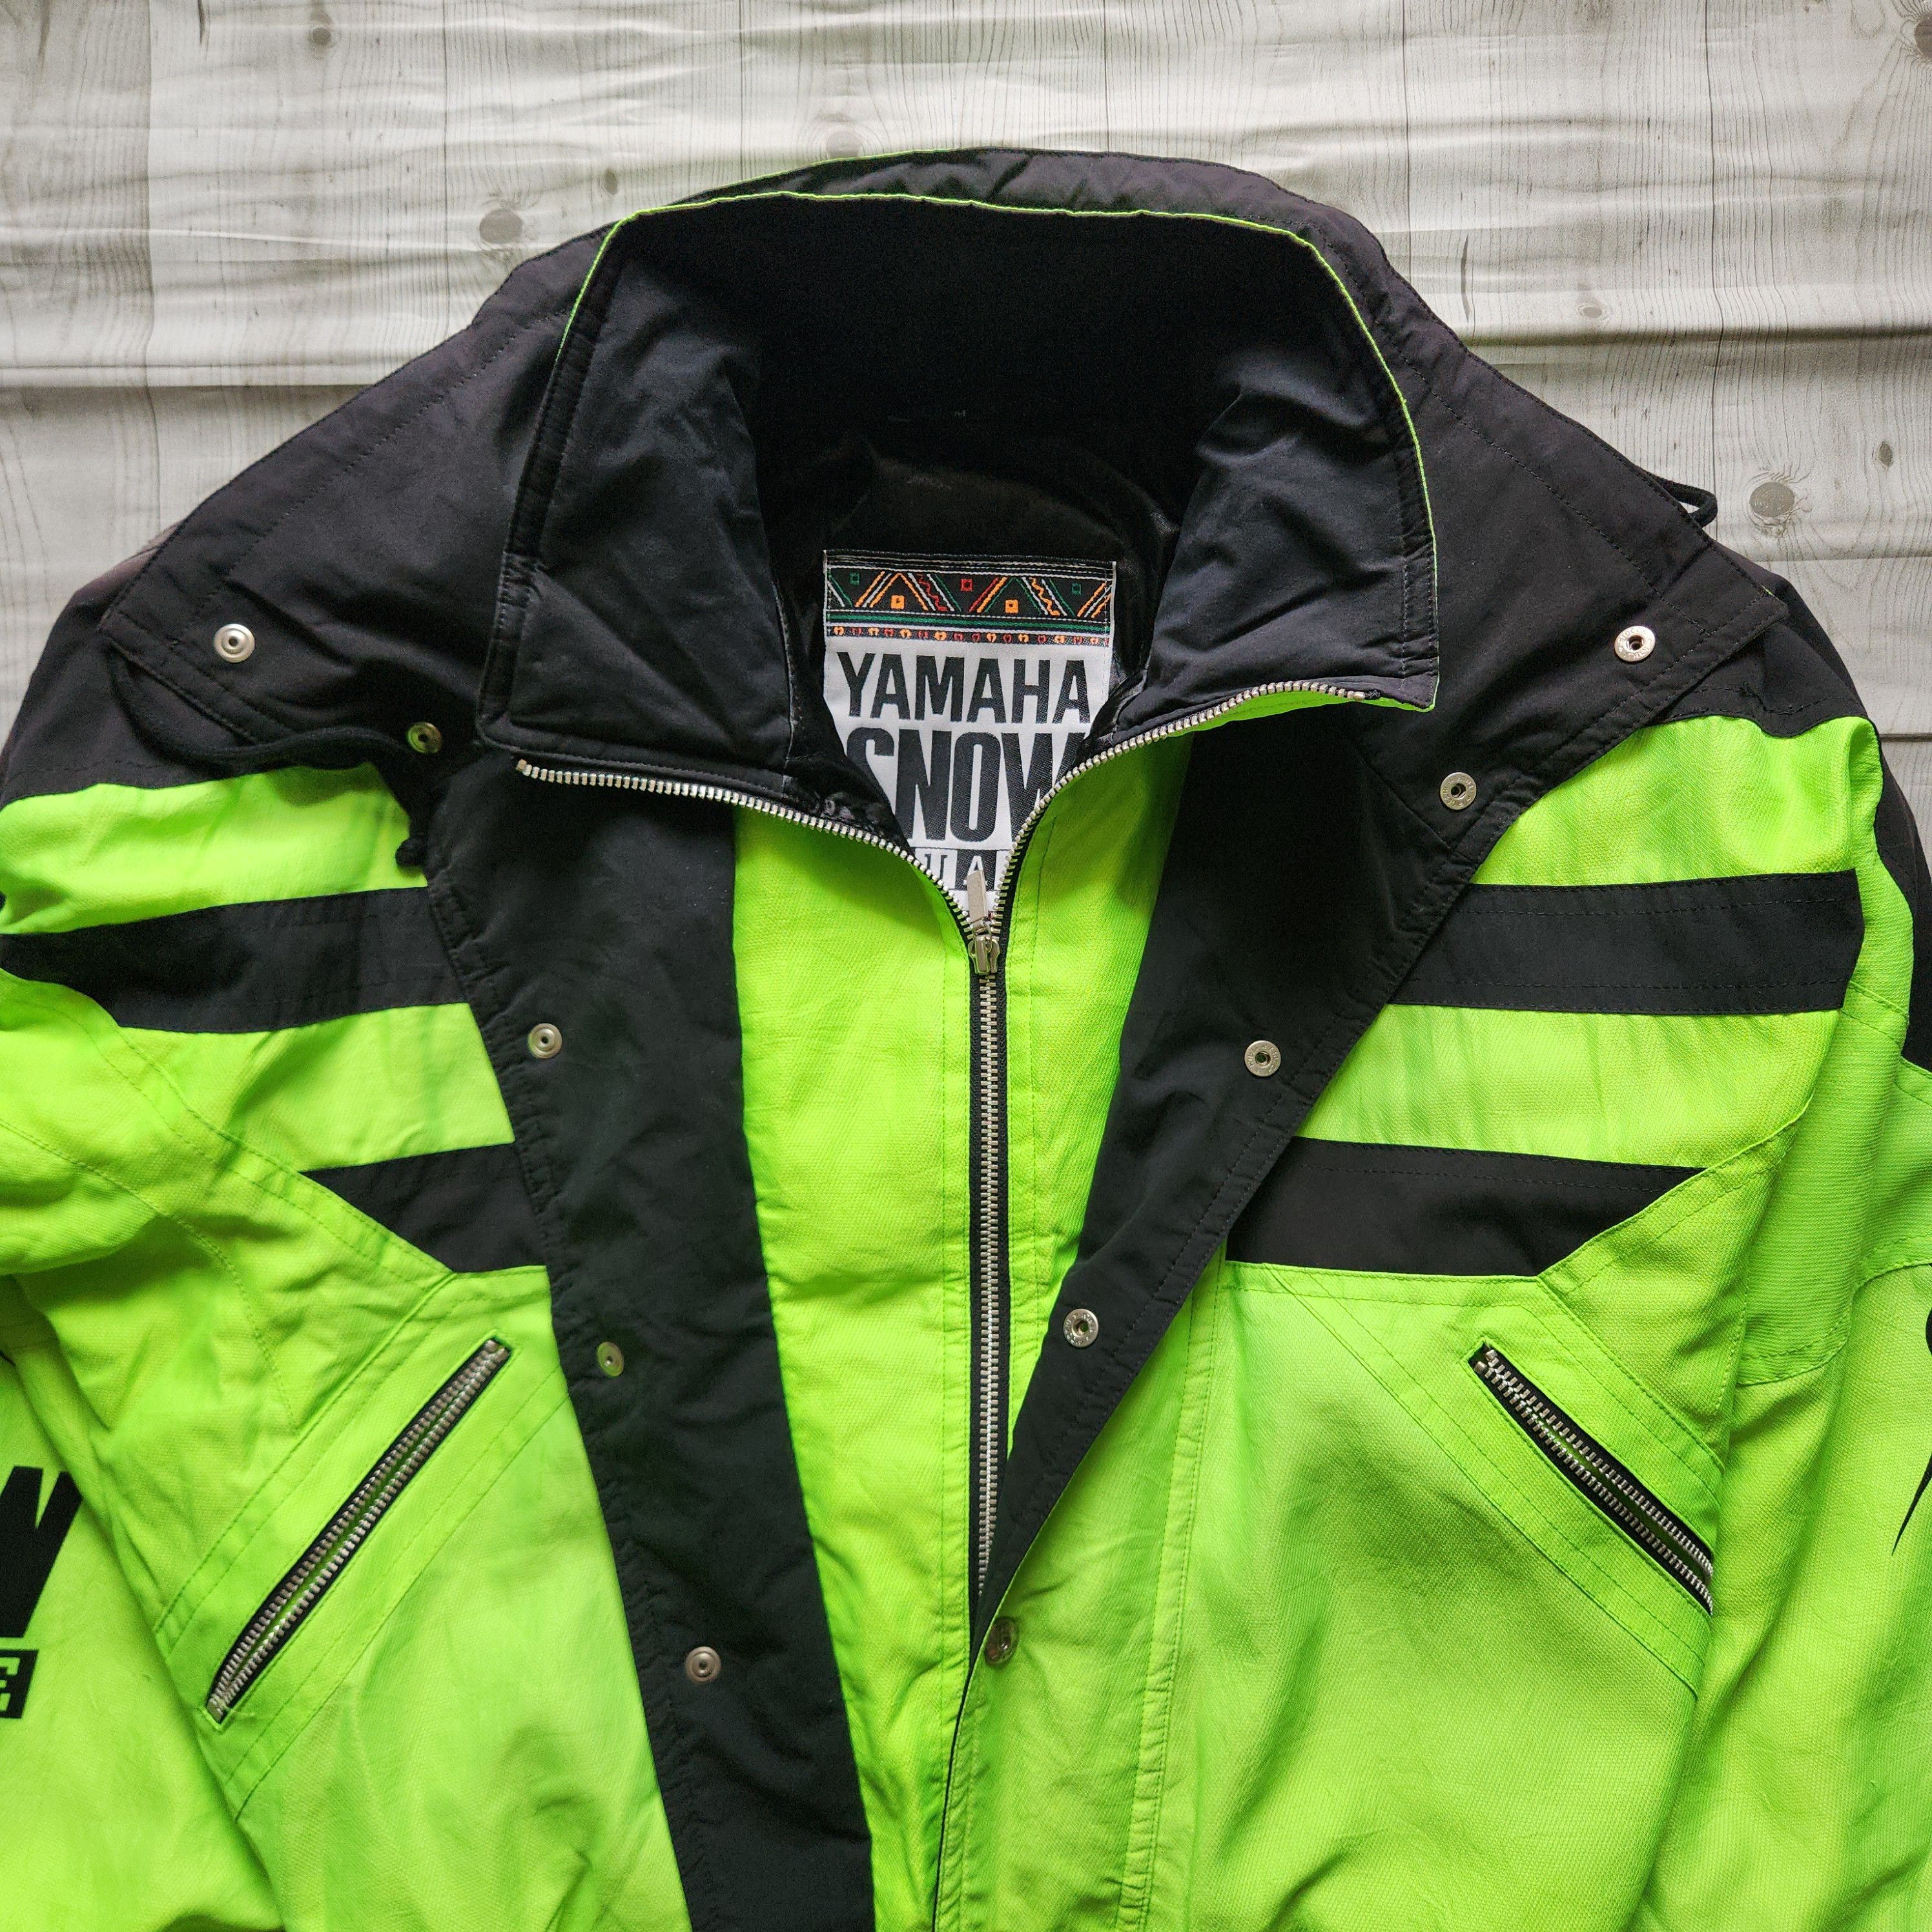 Yamaha - Yahama Snow Square Ski Jacket - 4